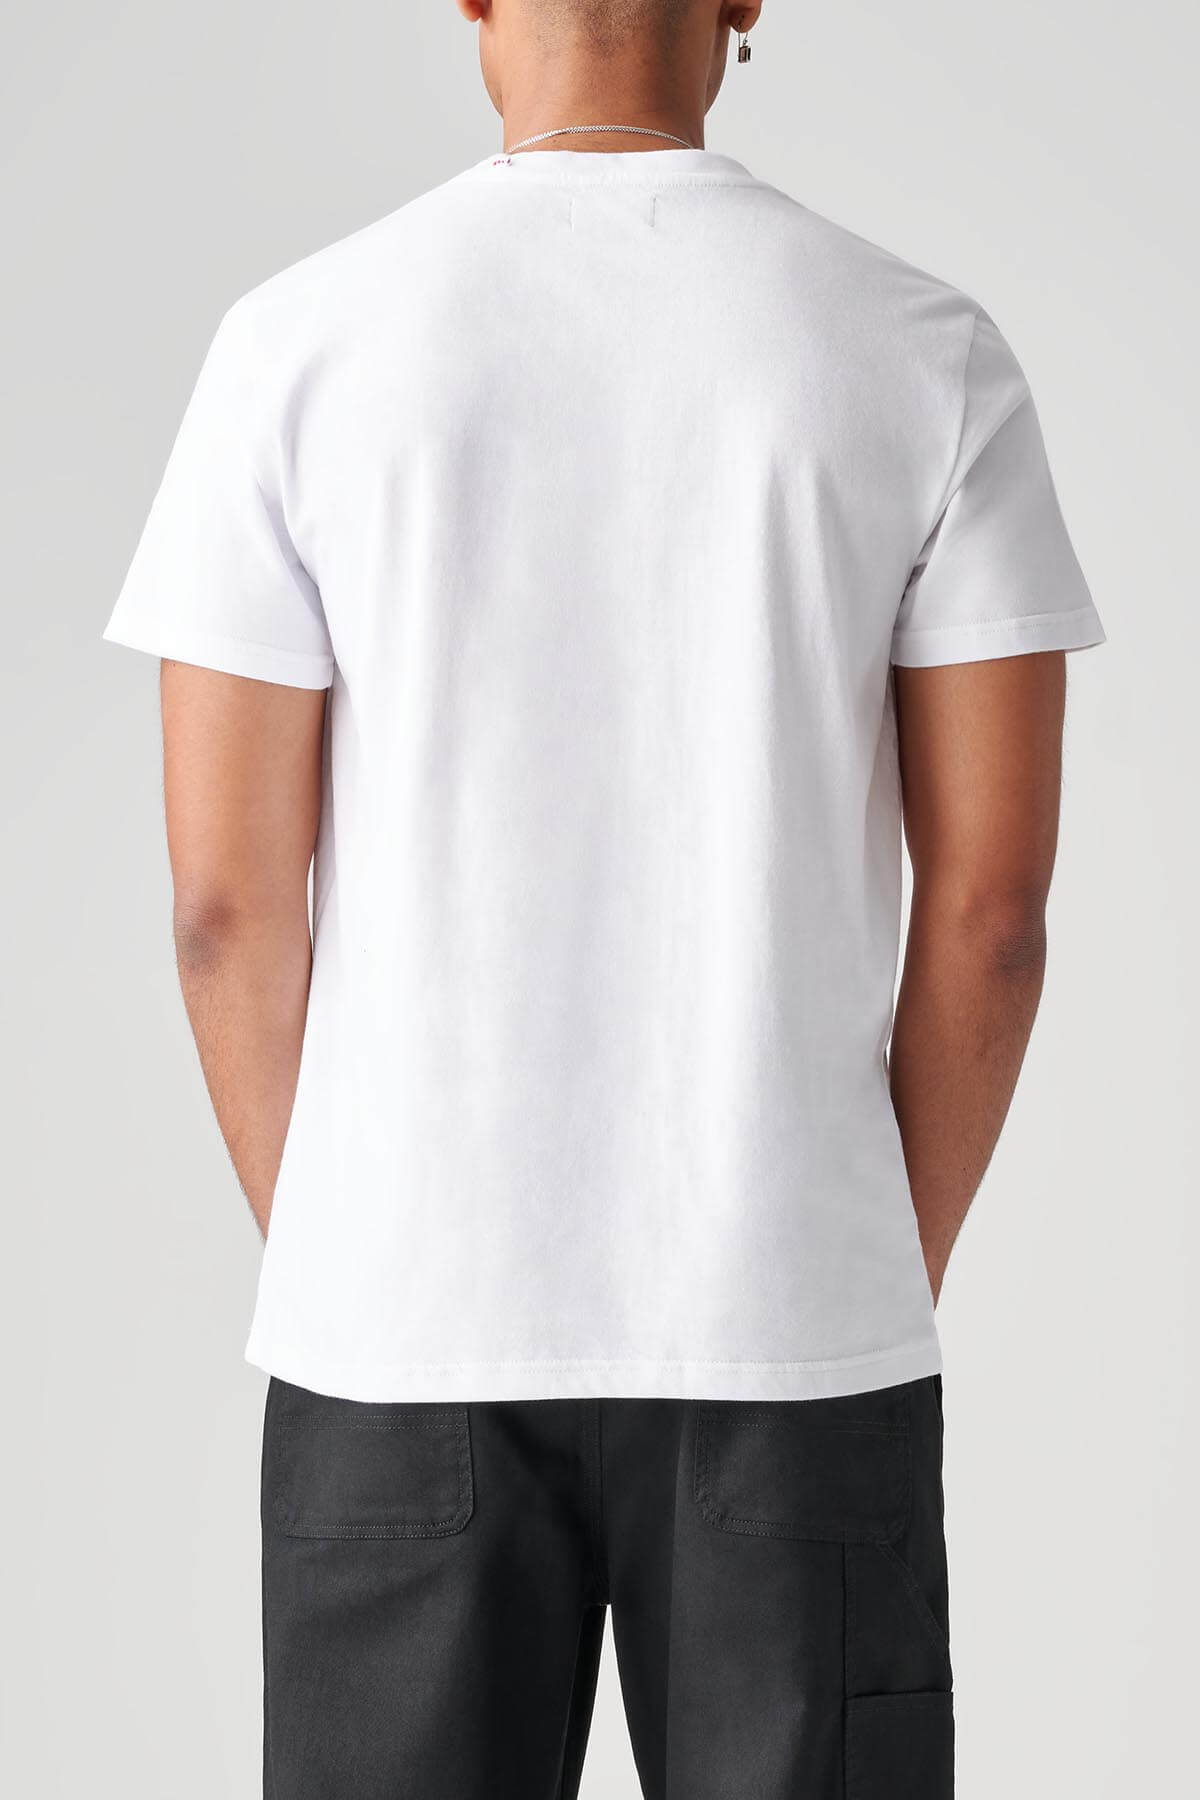 tee-shirt "peeking out white